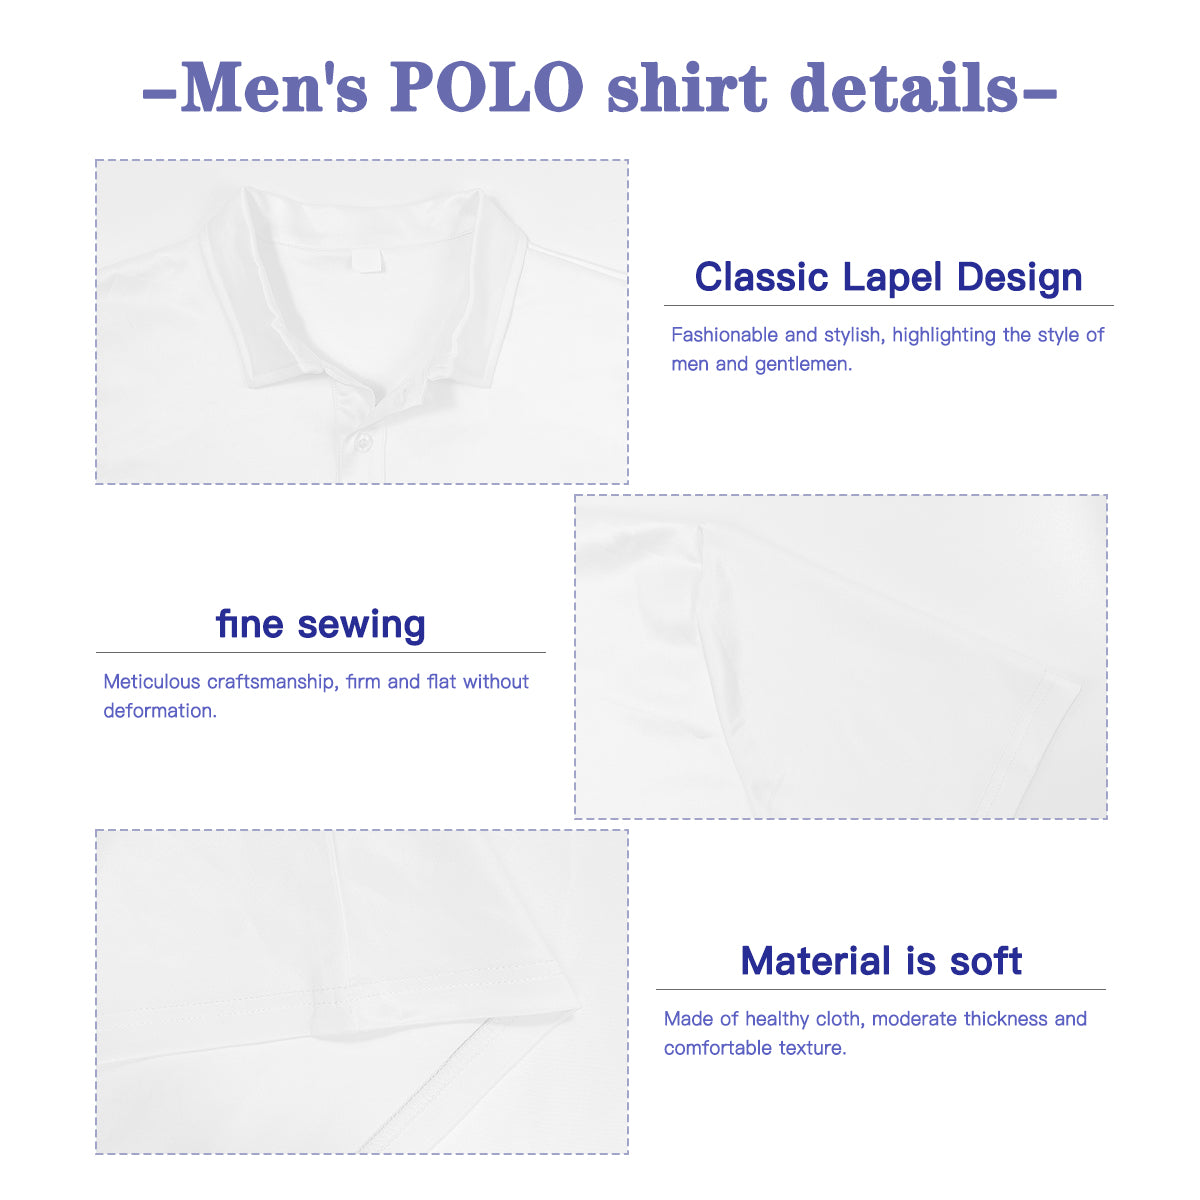 Polo Shirt Men, Retro Polo Shirt, Mid Century Shirt, 60s Style Shirt Men, Mod Shirt Men, 60s style Shirt Men,Brown Mustard Yellow Polo Shirt